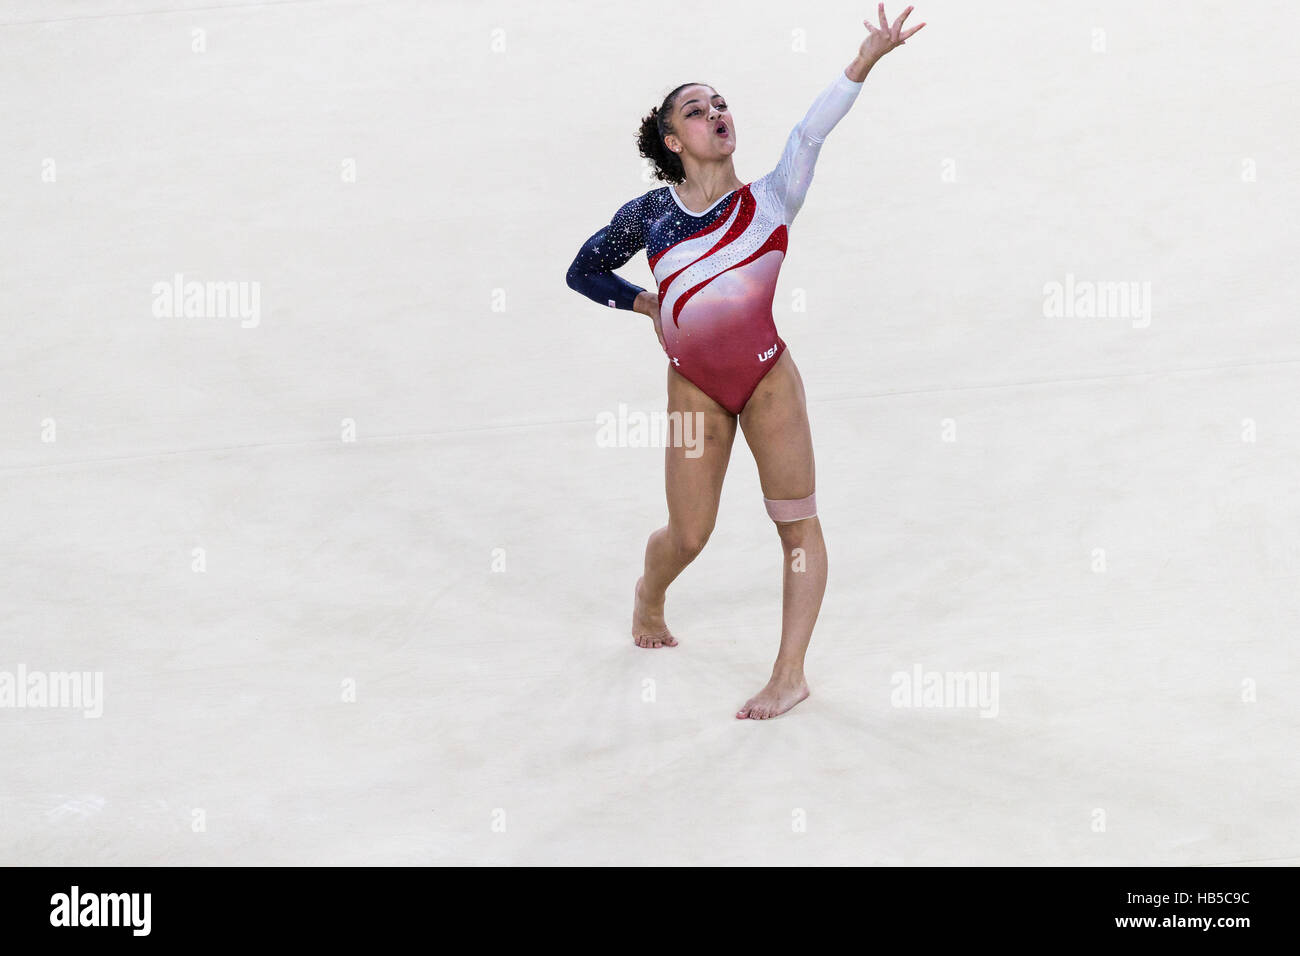 Rio De Janeiro, Brasilien. 9. August 2016.  Lauren Hernandez (USA) durchführt Fußbodenübung als Bestandteil der Gold-Medaille gewinnen Frauen Gymnastik-Team Stockfoto